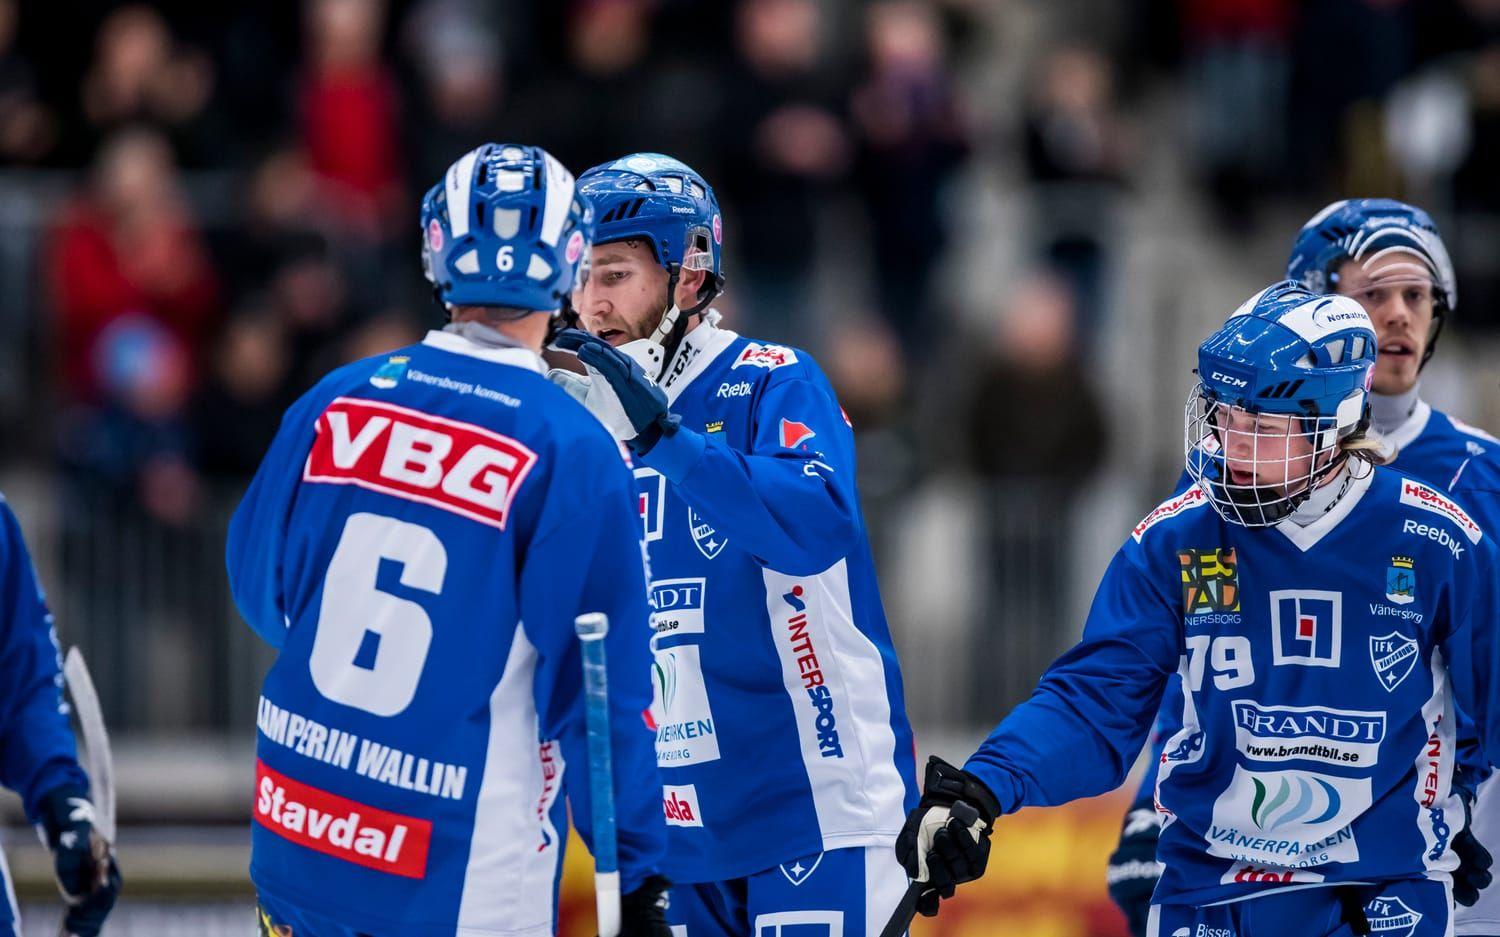 Bild: Sebastian Lamotte. Joakim Hedqvist bombade in 4-1 på hörna och 5-1 på straff.